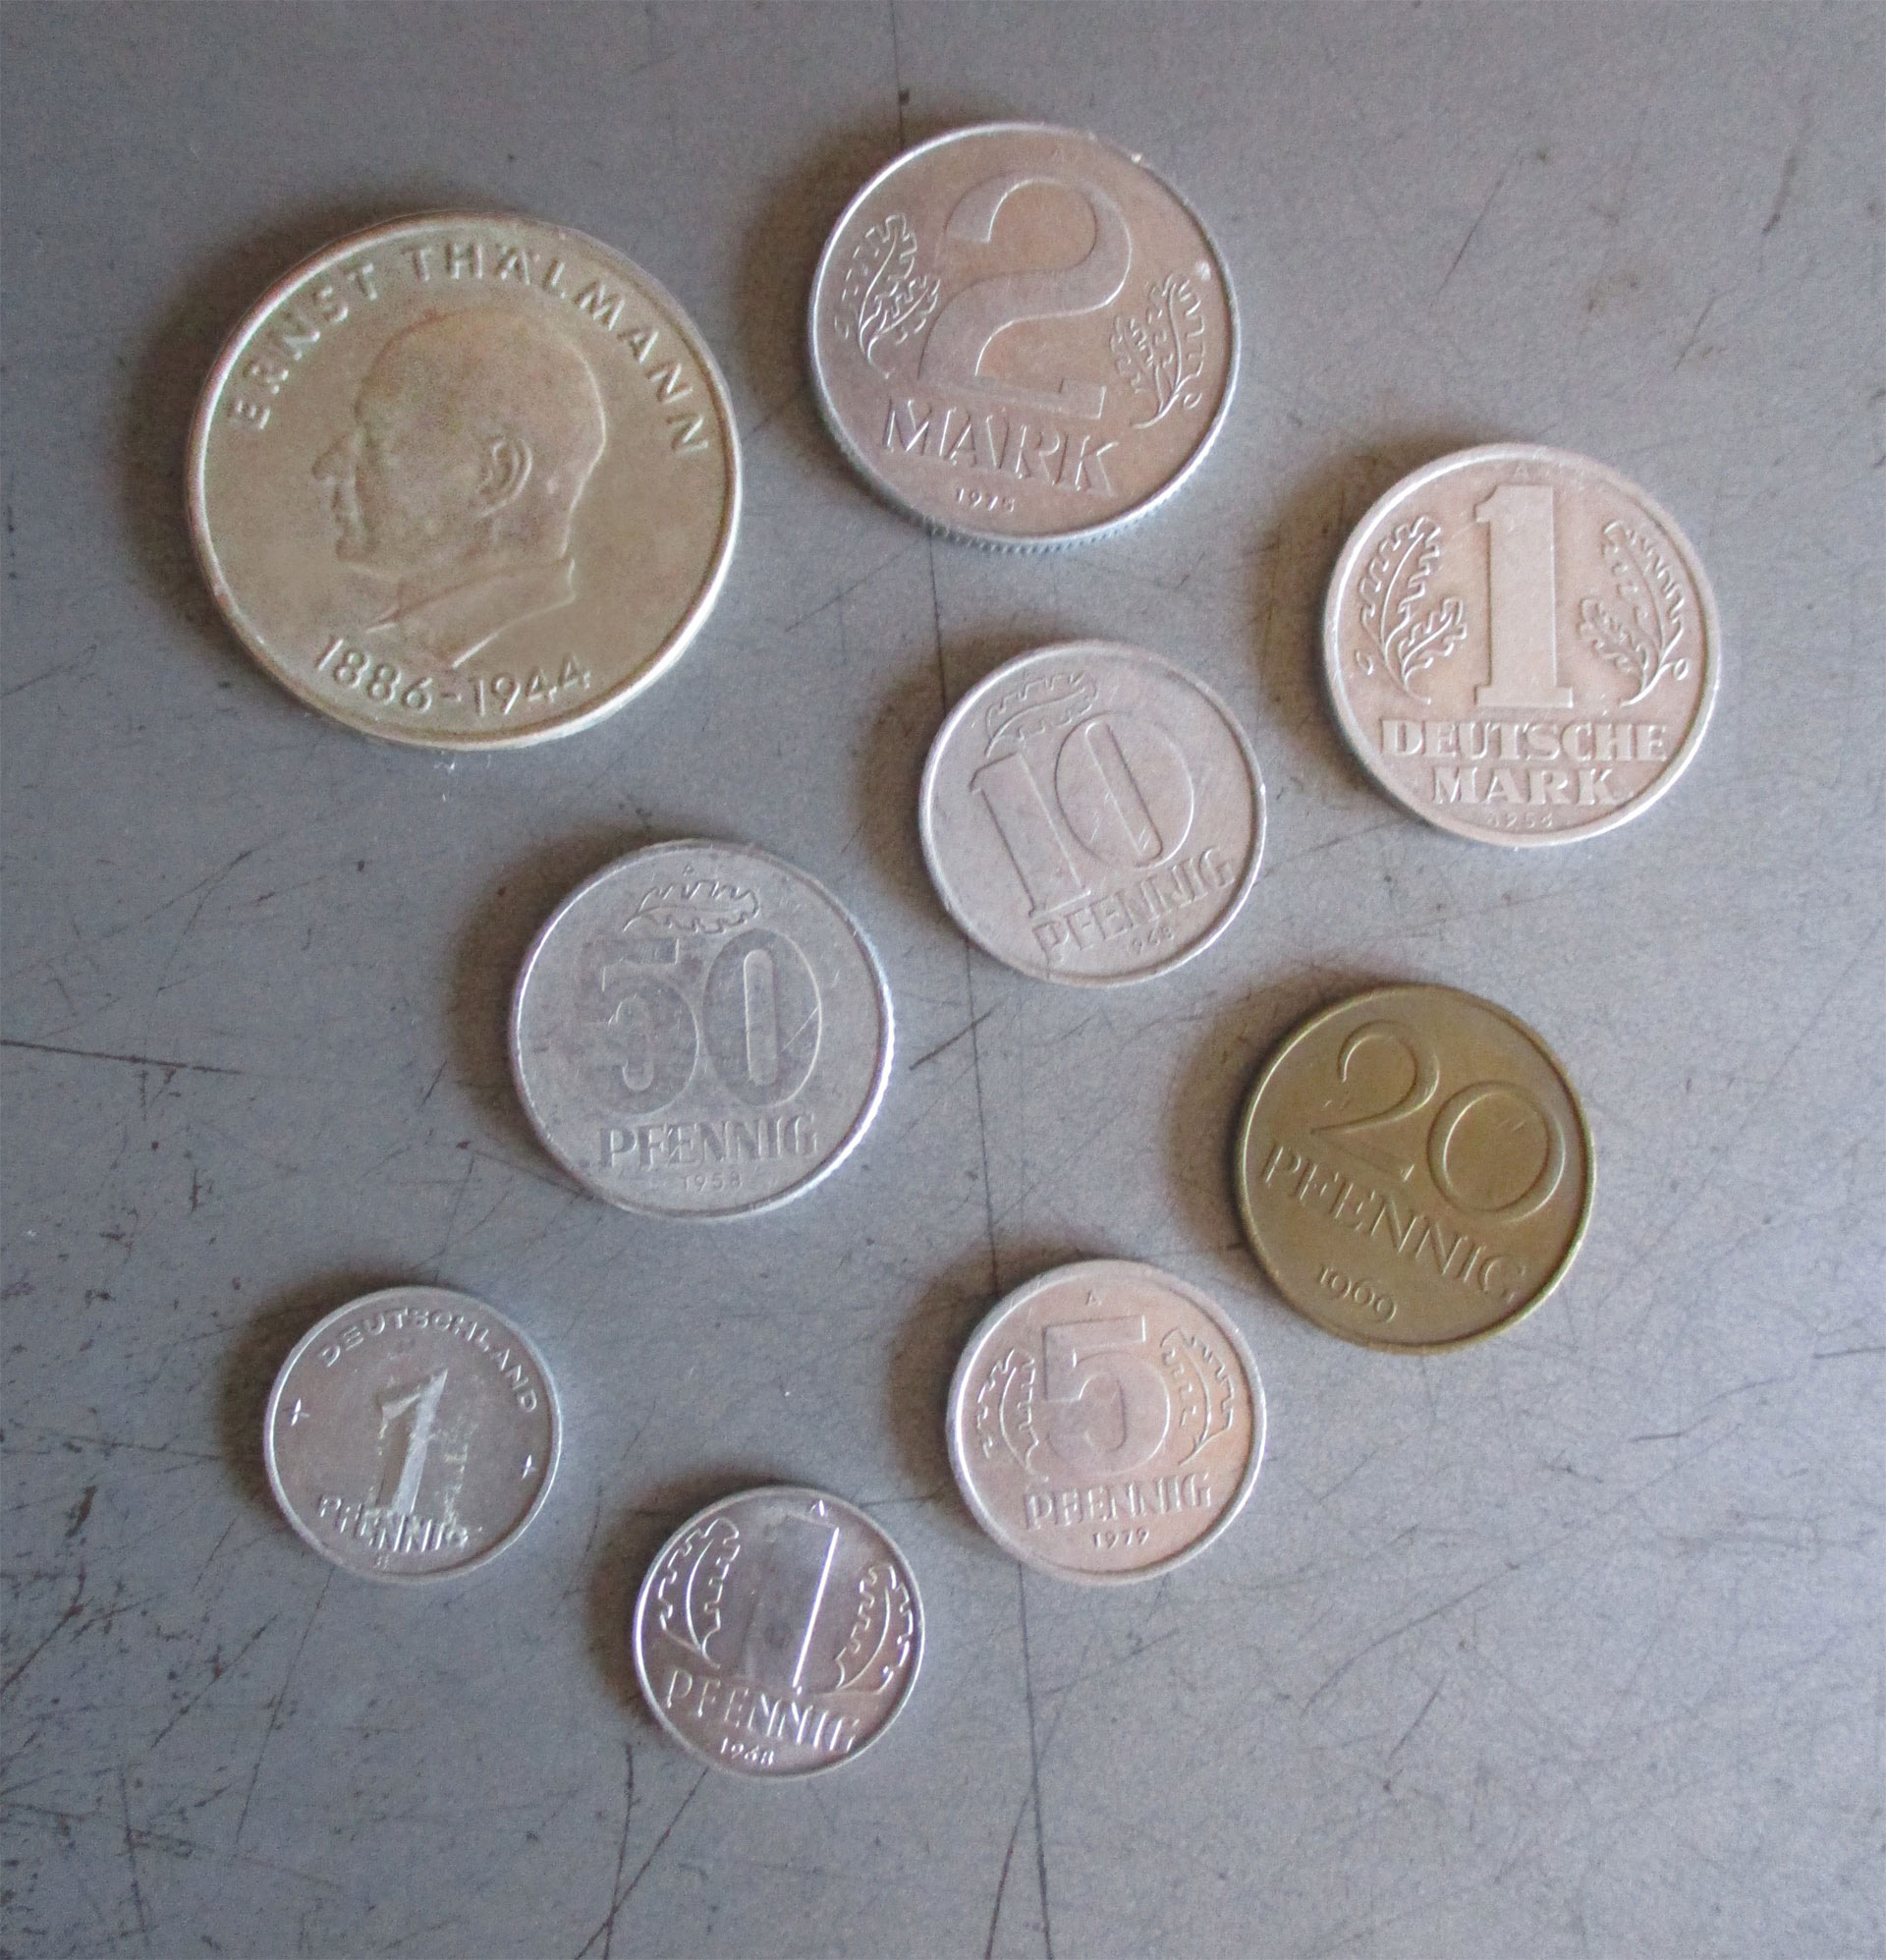 East German coins